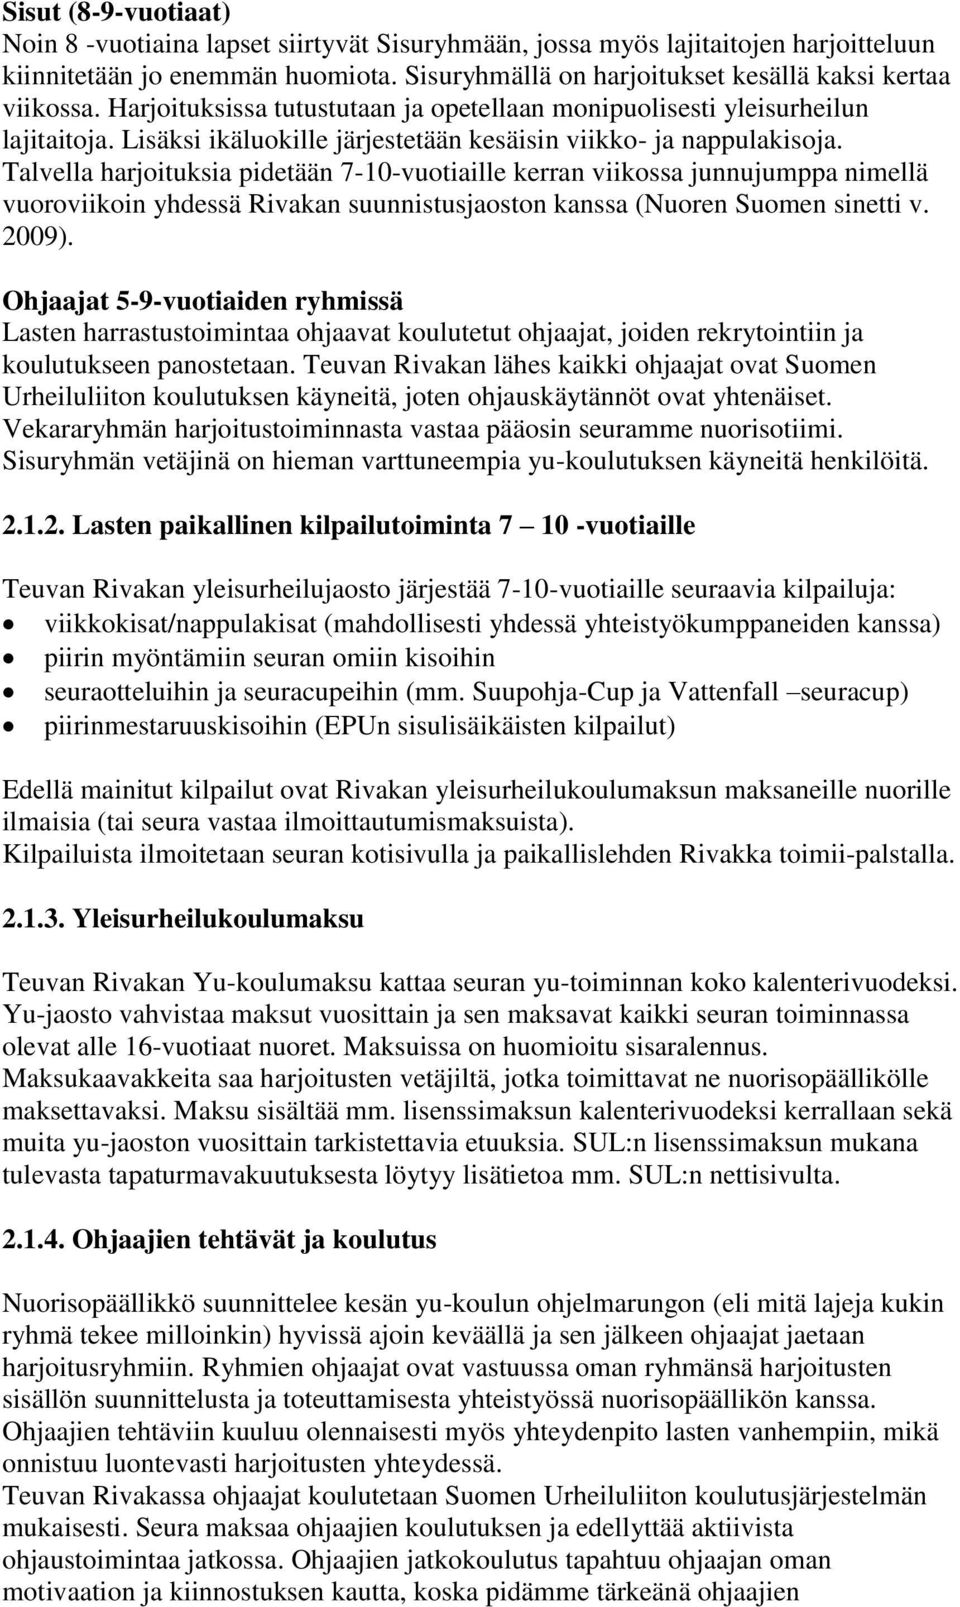 Talvella harjoituksia pidetään 7-10-vuotiaille kerran viikossa junnujumppa nimellä vuoroviikoin yhdessä Rivakan suunnistusjaoston kanssa (Nuoren Suomen sinetti v. 2009).